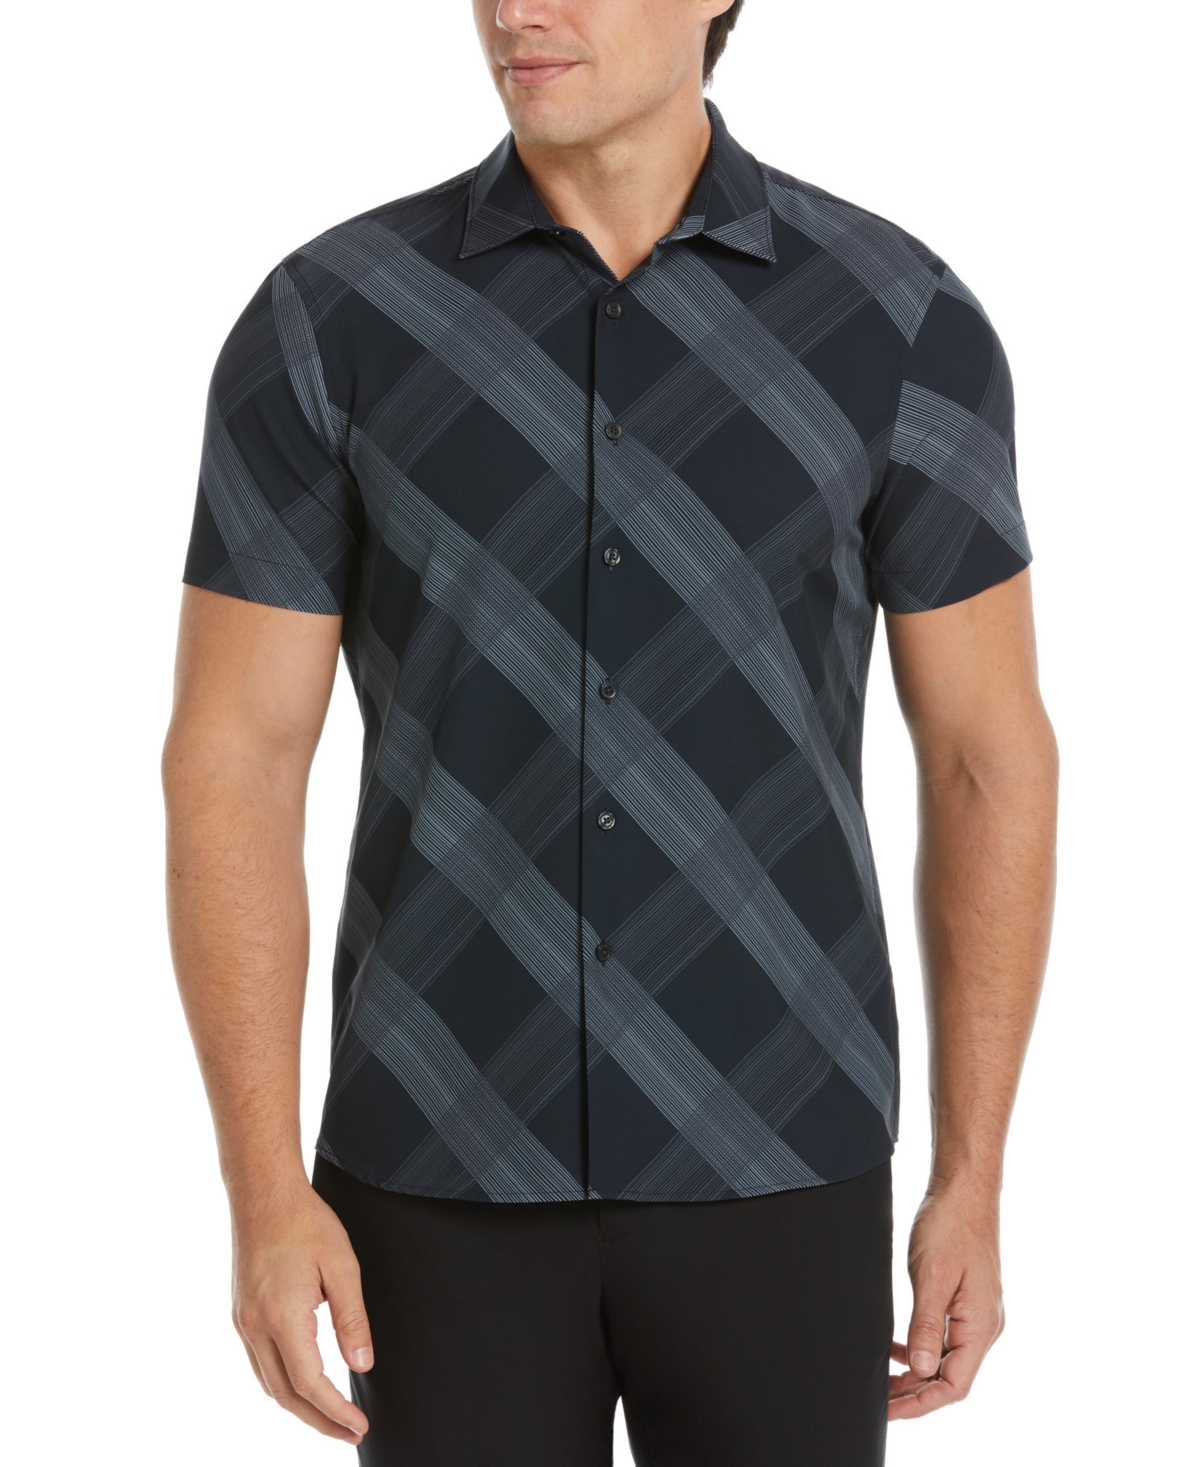 Men's Slim-Fit Diagonal Plaid Short Sleeve Button-Front Shirt - Magnet